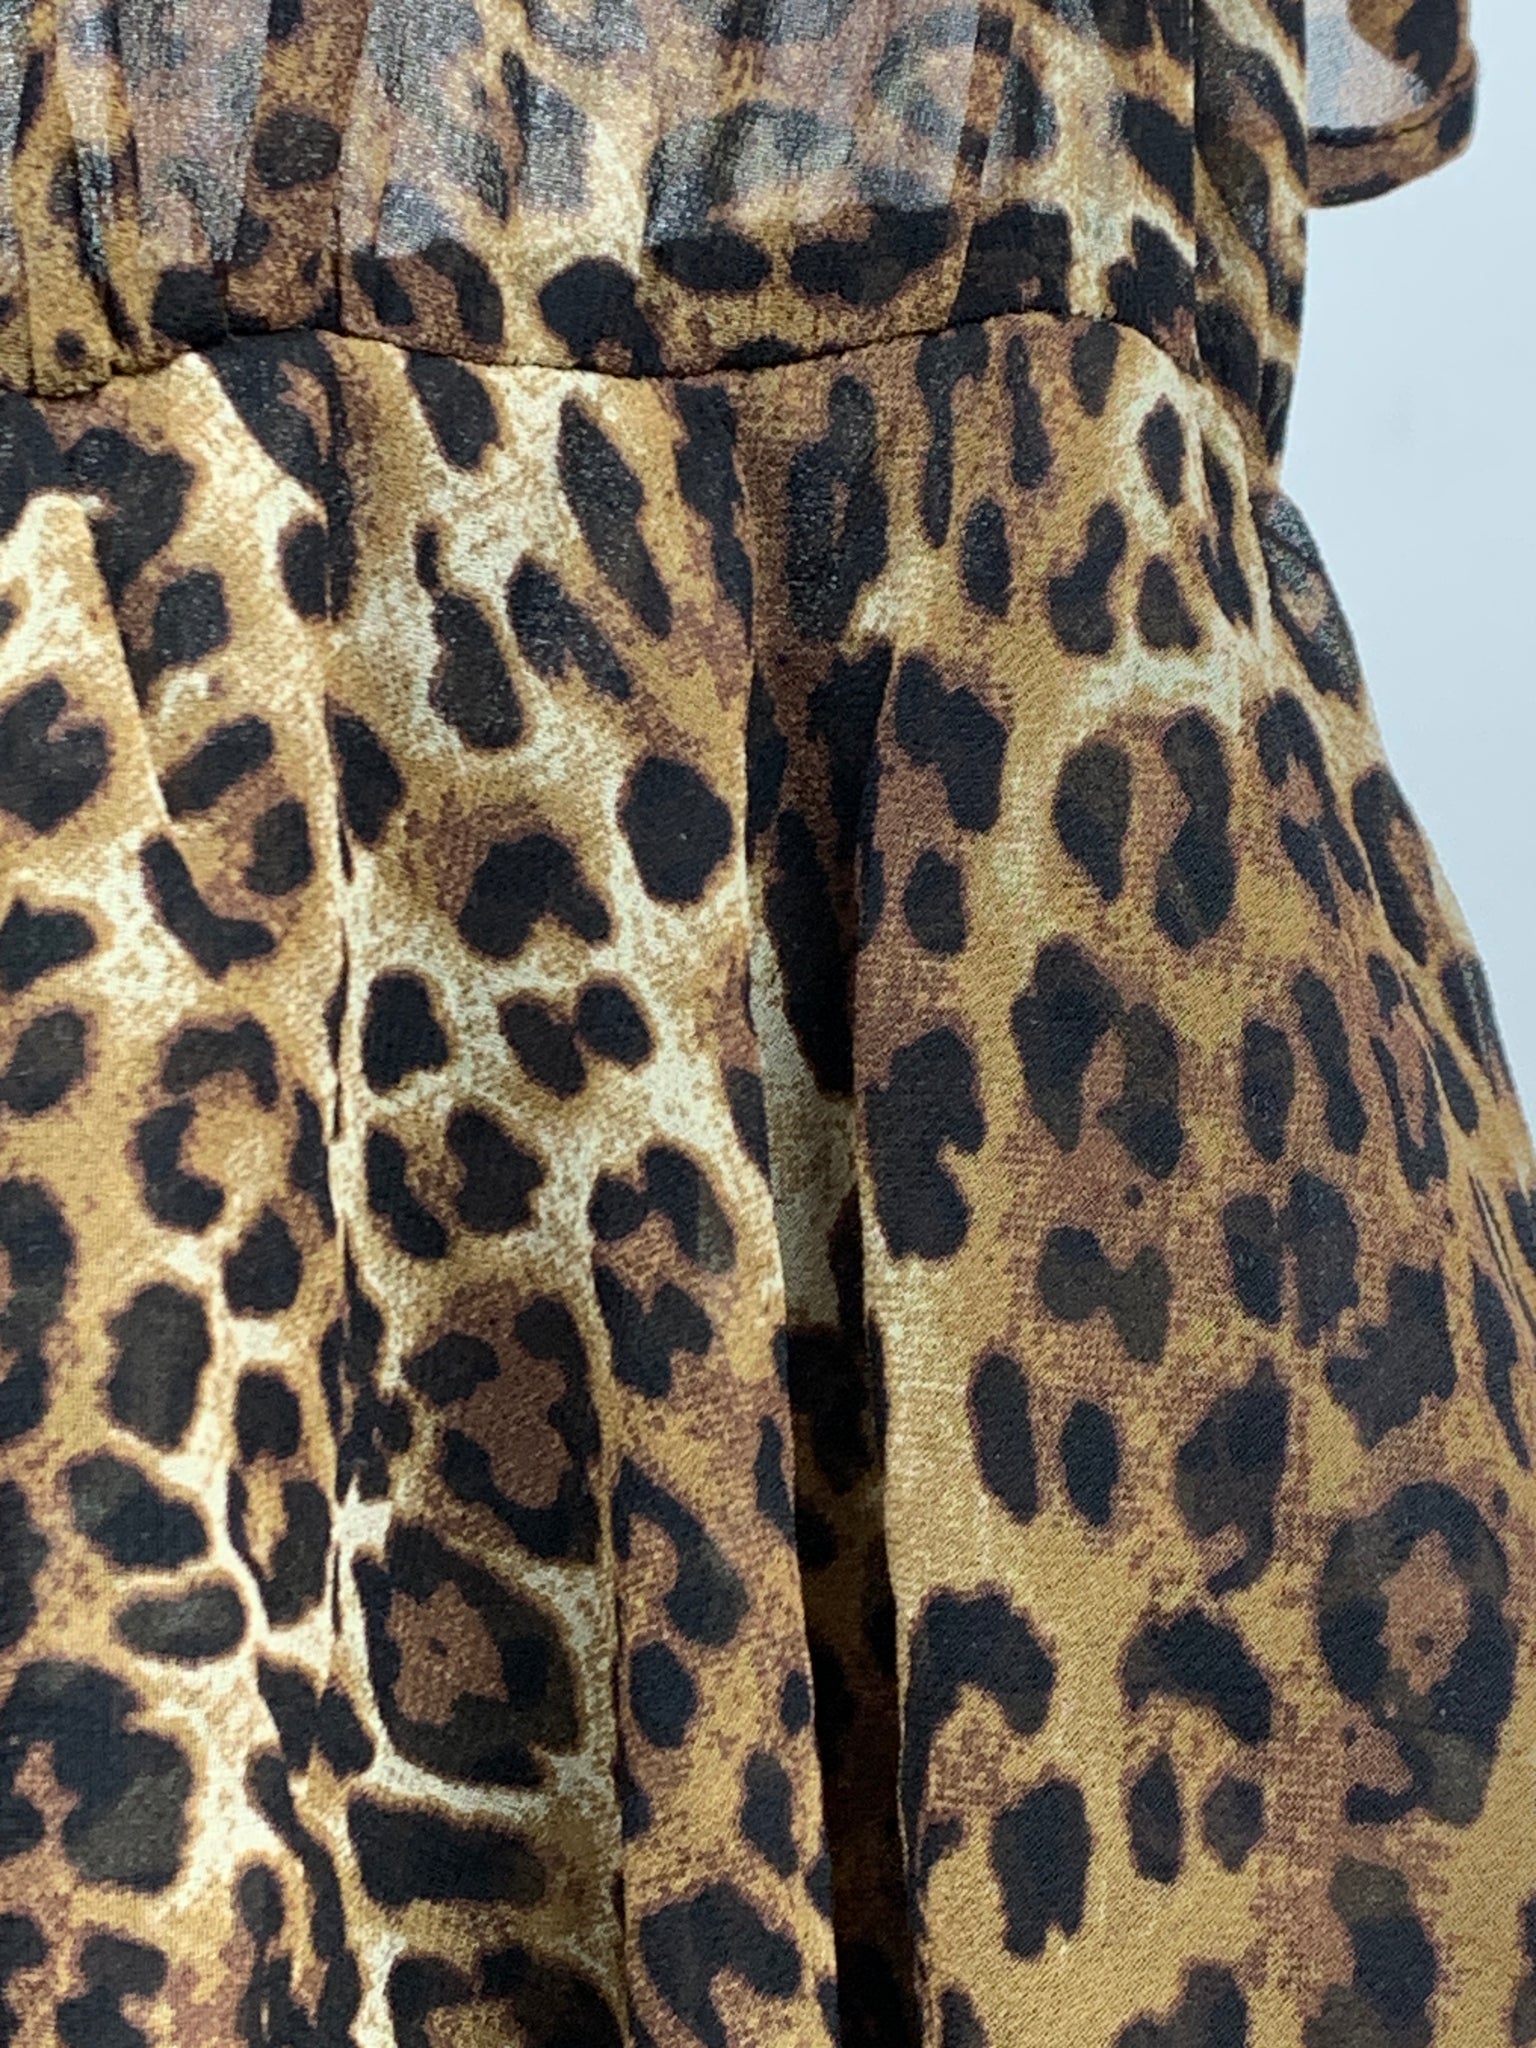 NA-KD leopardmønstret kjole